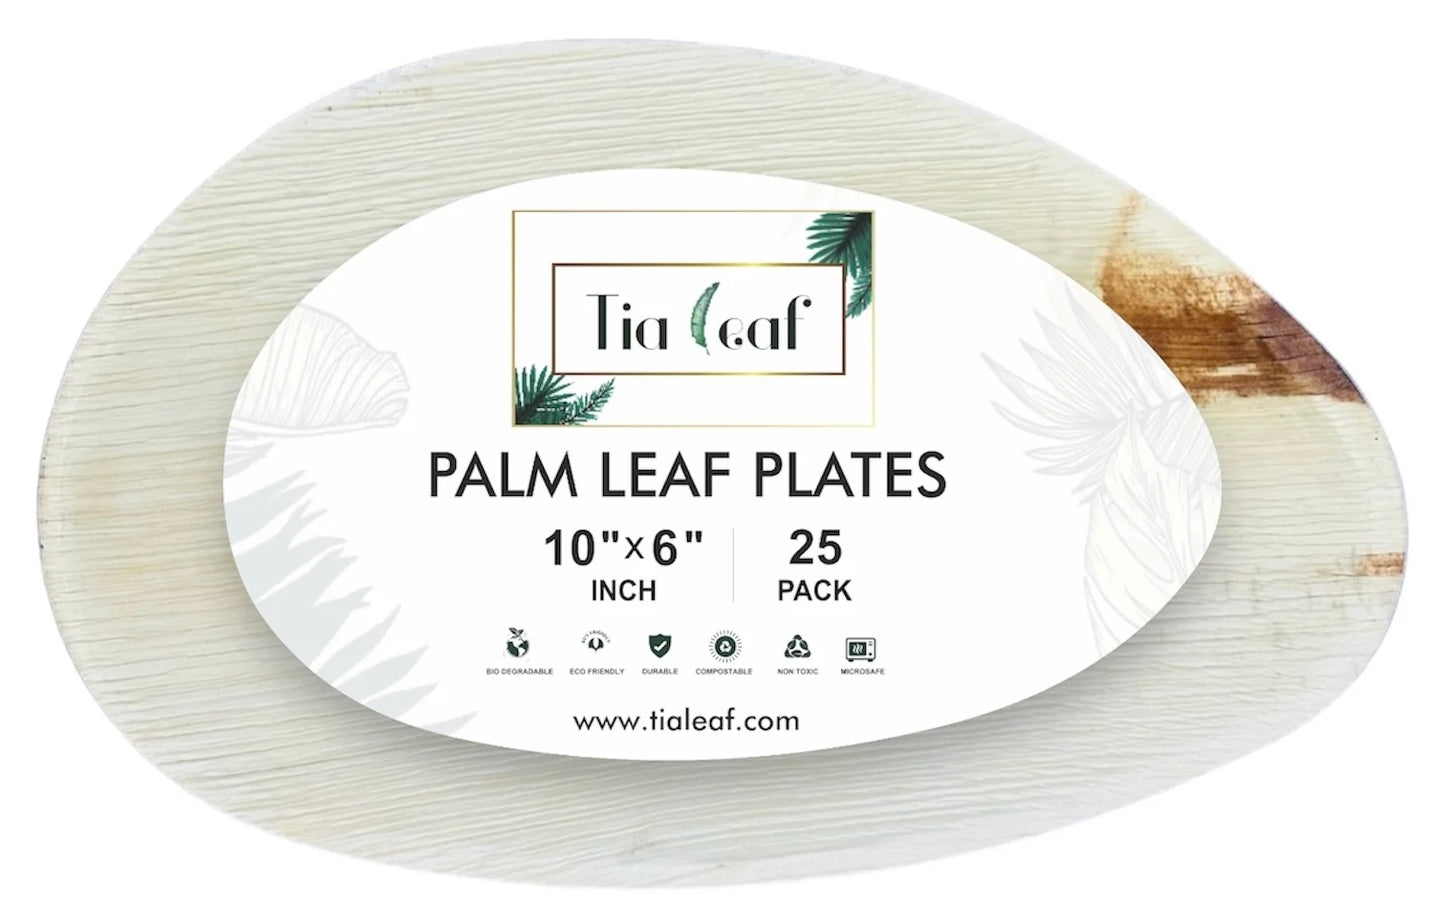 10"x6" Oval Palm Leaf Plates